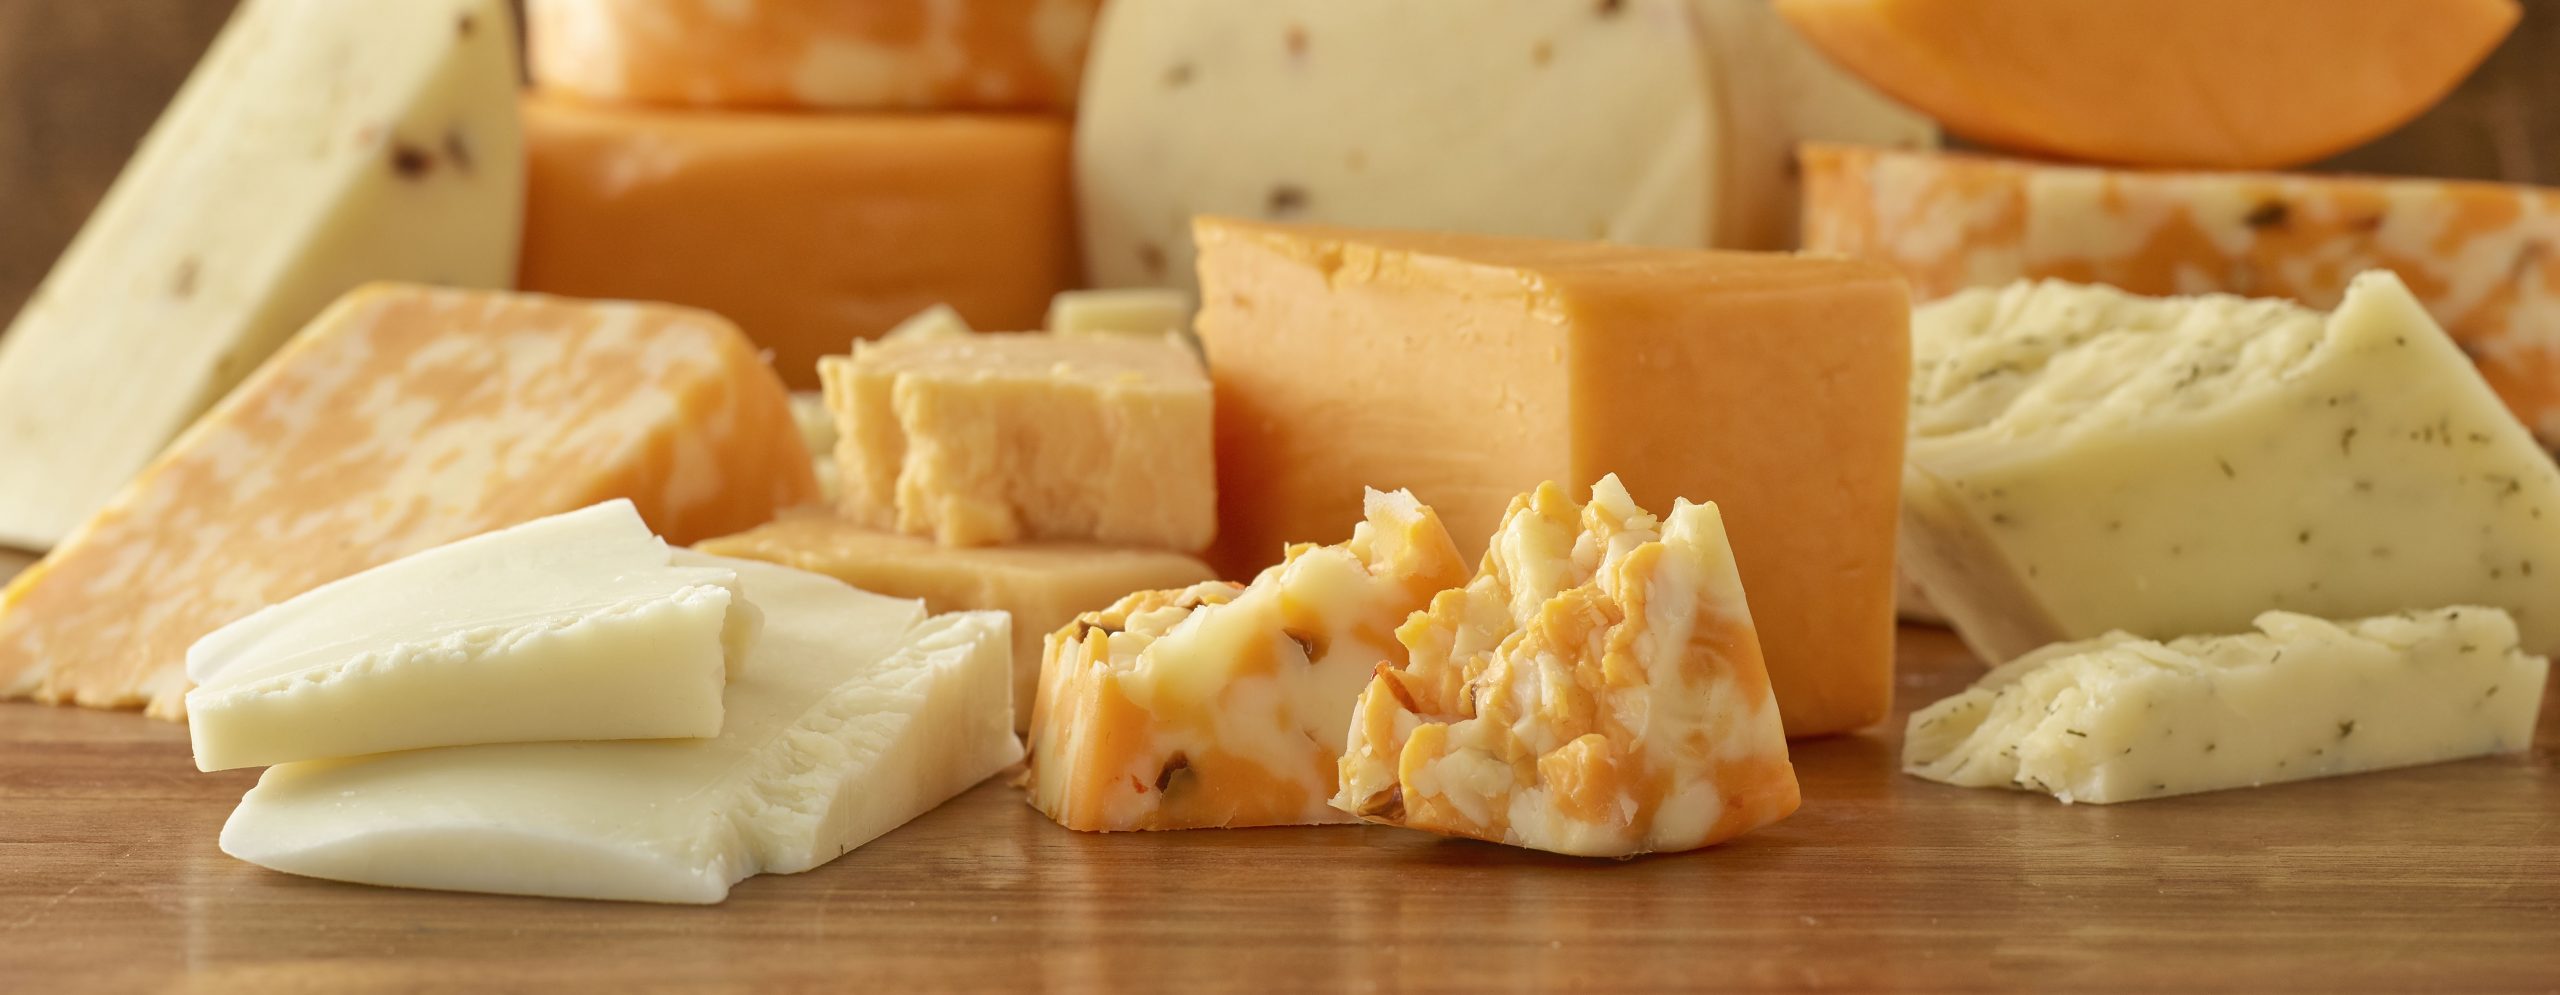 Cheese from Heritage Ridge Creamery